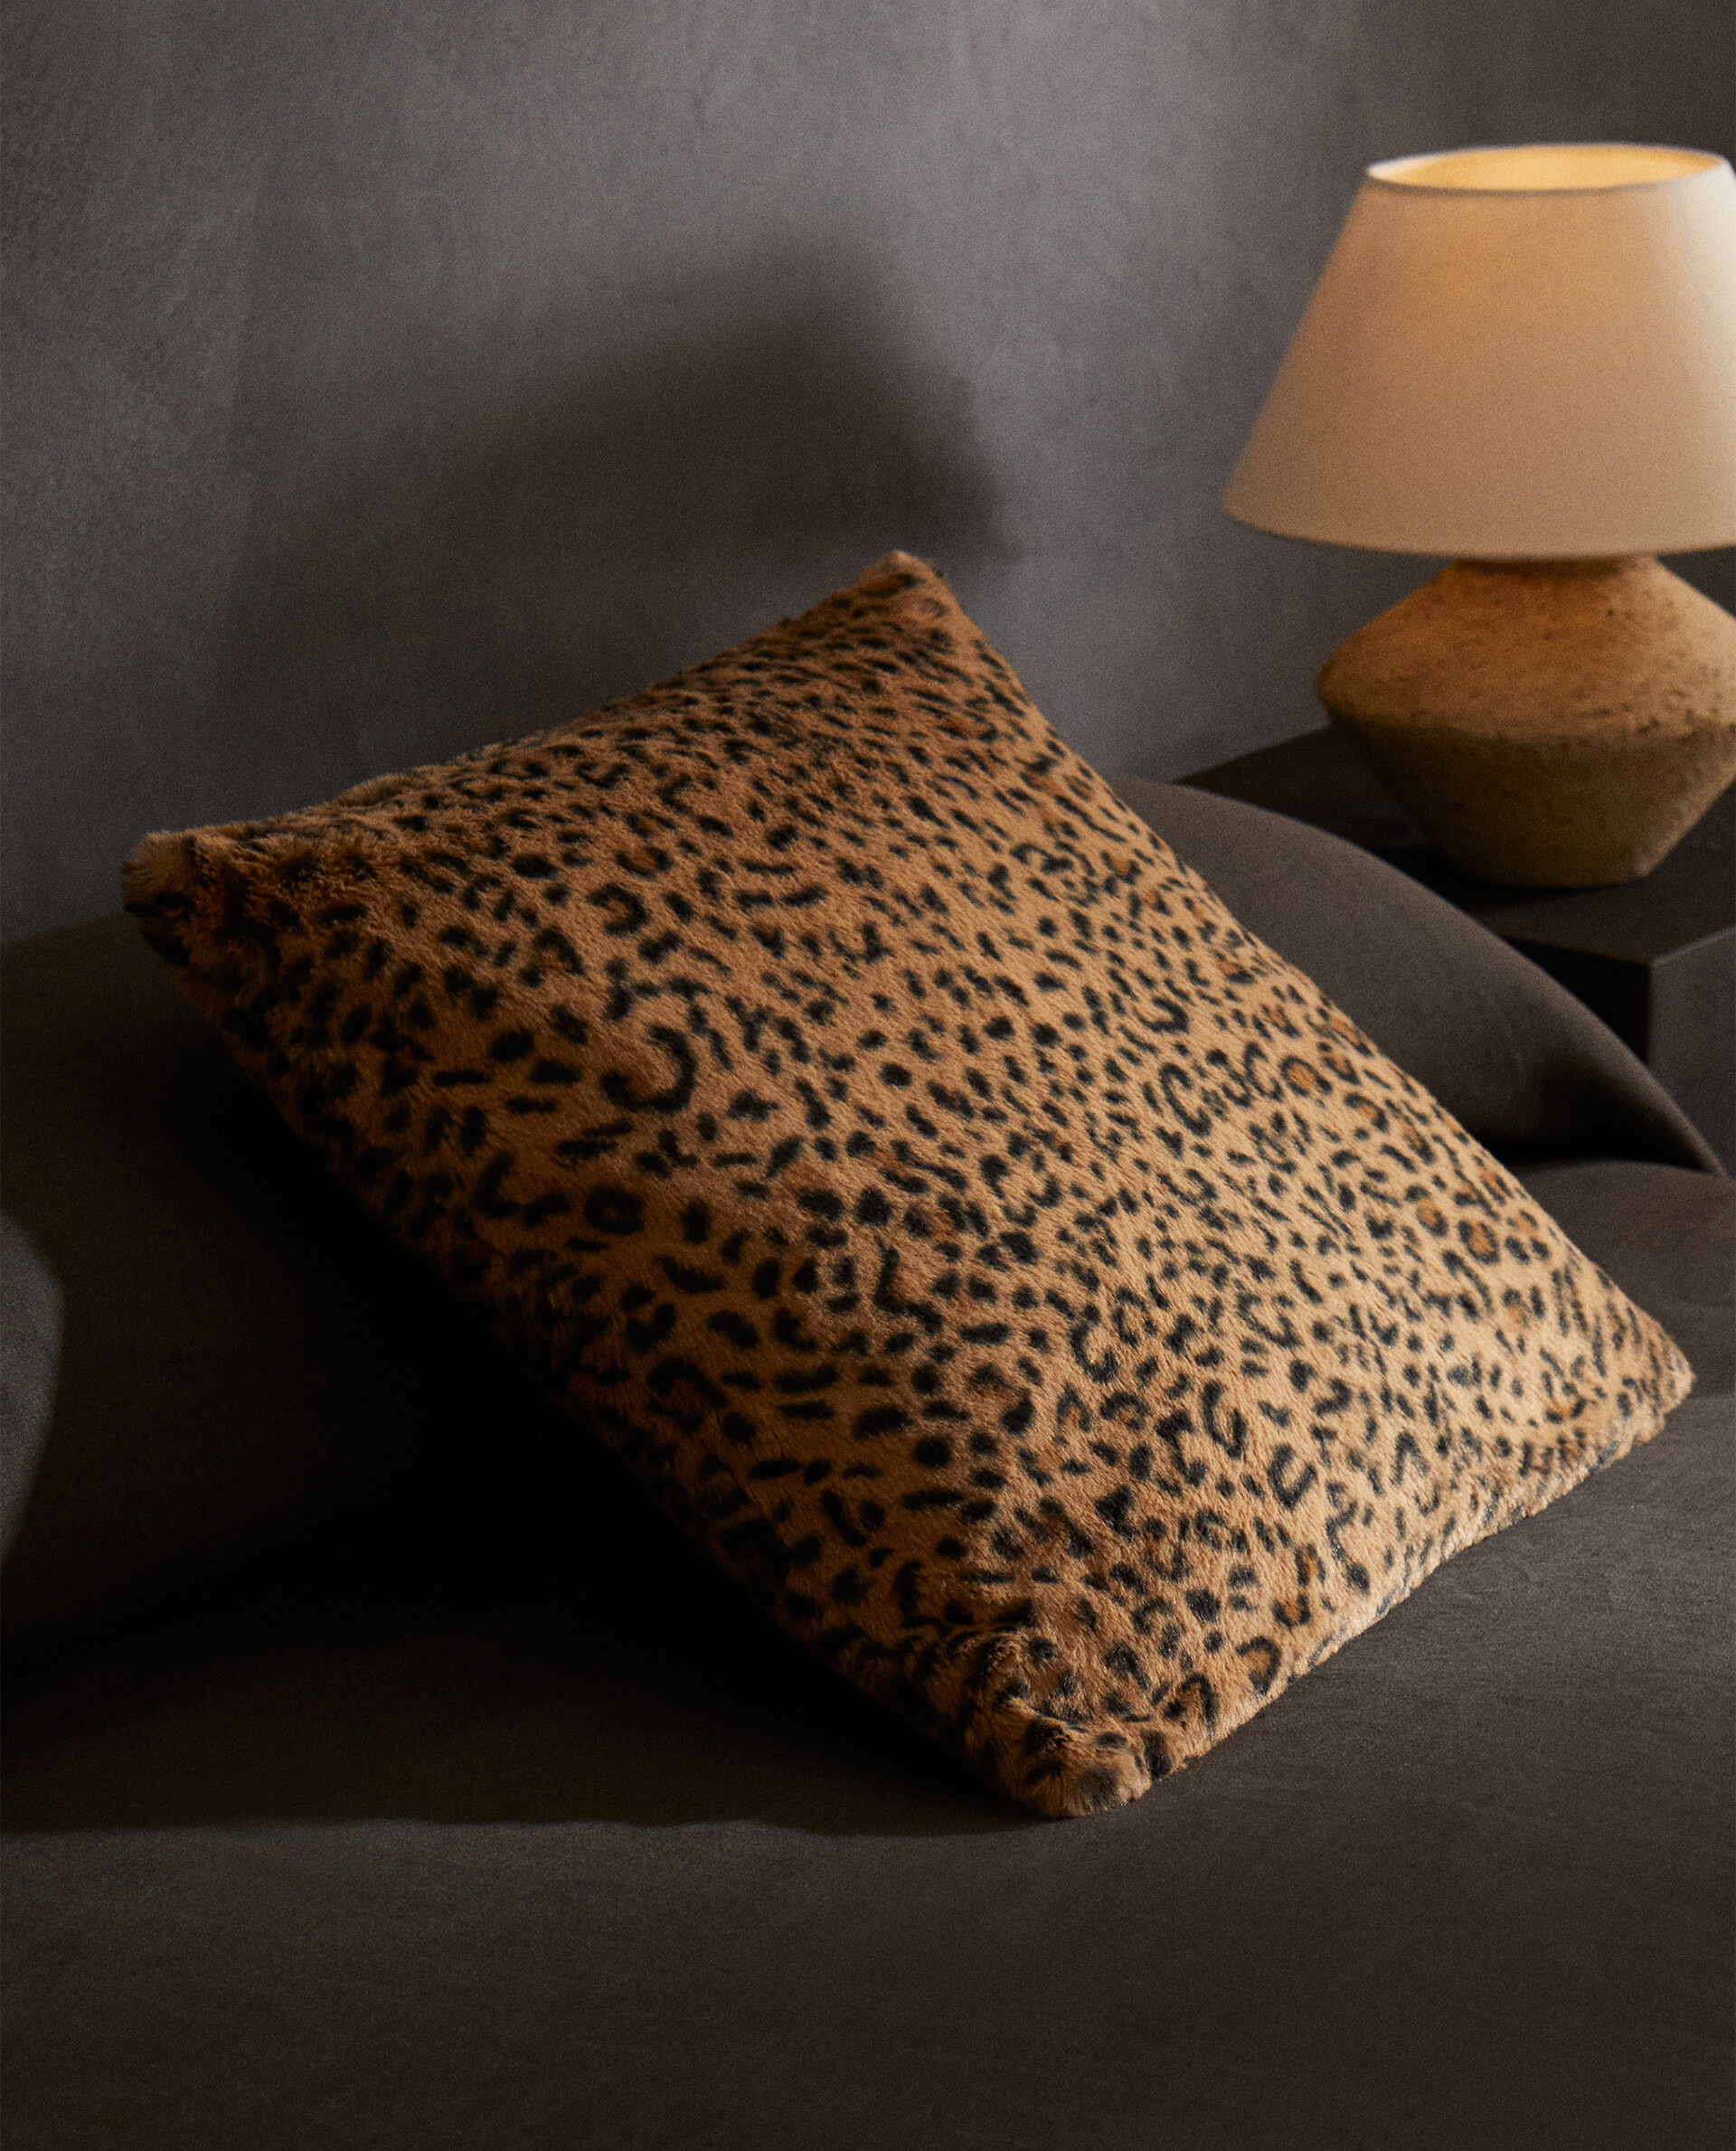 Cojin 40x40 diseño leopardo, funda cojin estampado leopardo, almohada  algodon leopardo, funda cojin estampado animal -  España